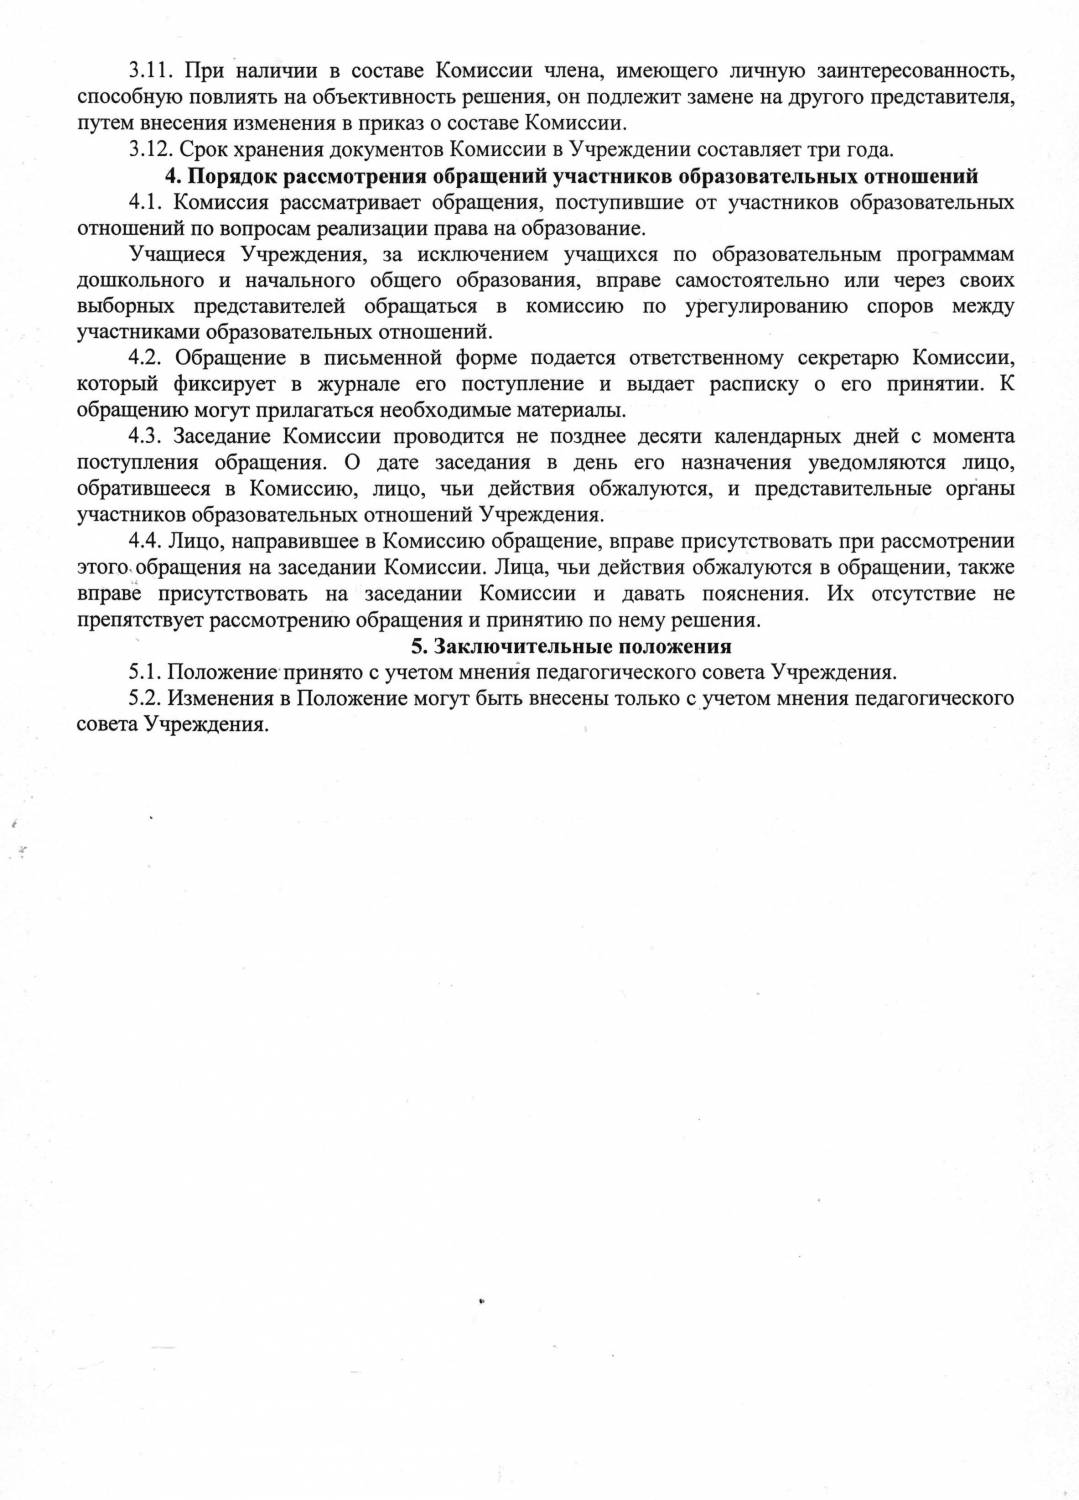 Указ президента о комиссии по урегулированию